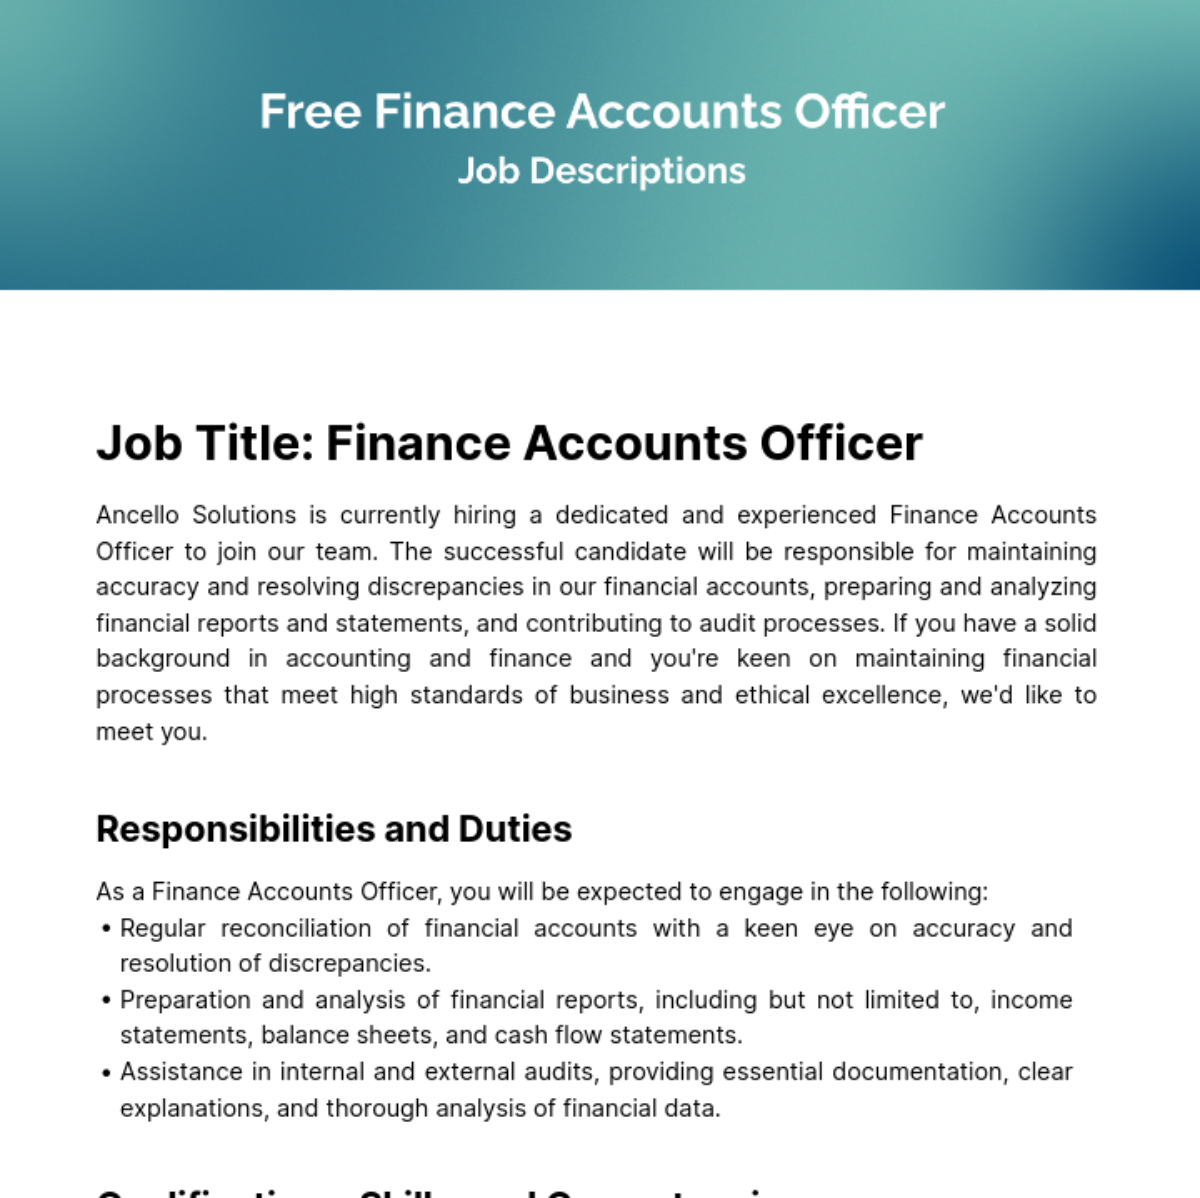 Finance Accounts Officer Job Description Template